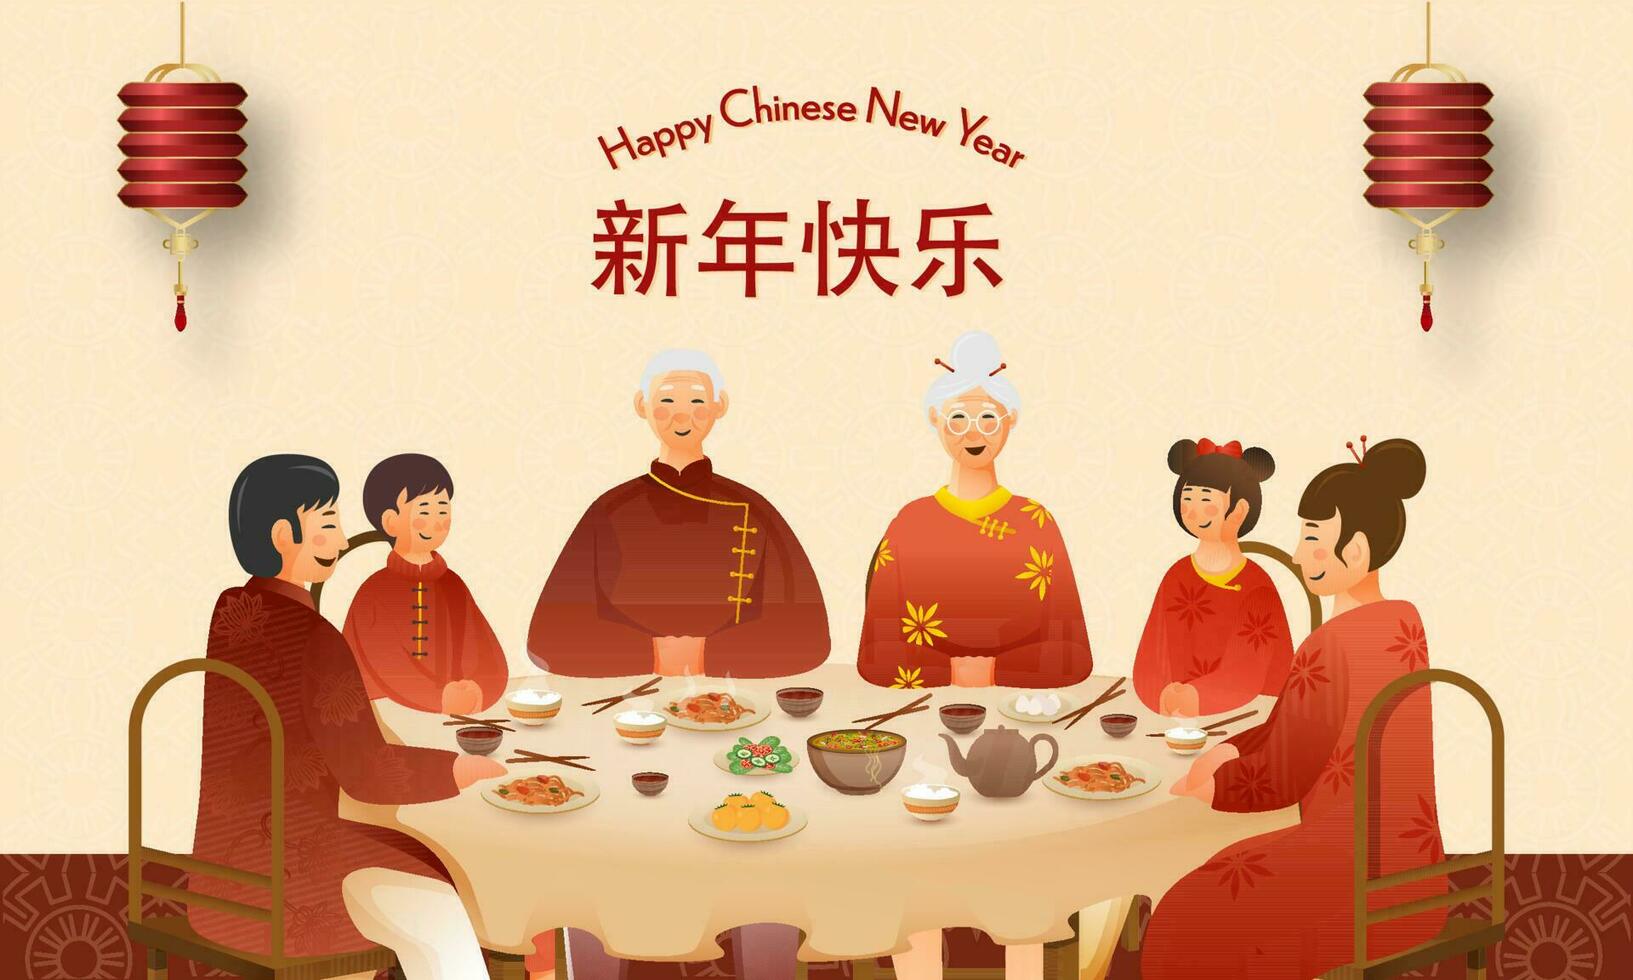 kinesisk familj njuter utsökt måltid tillsammans på dining tabell och lyktor hänga på persika bakgrund för Lycklig kinesisk ny år begrepp. vektor